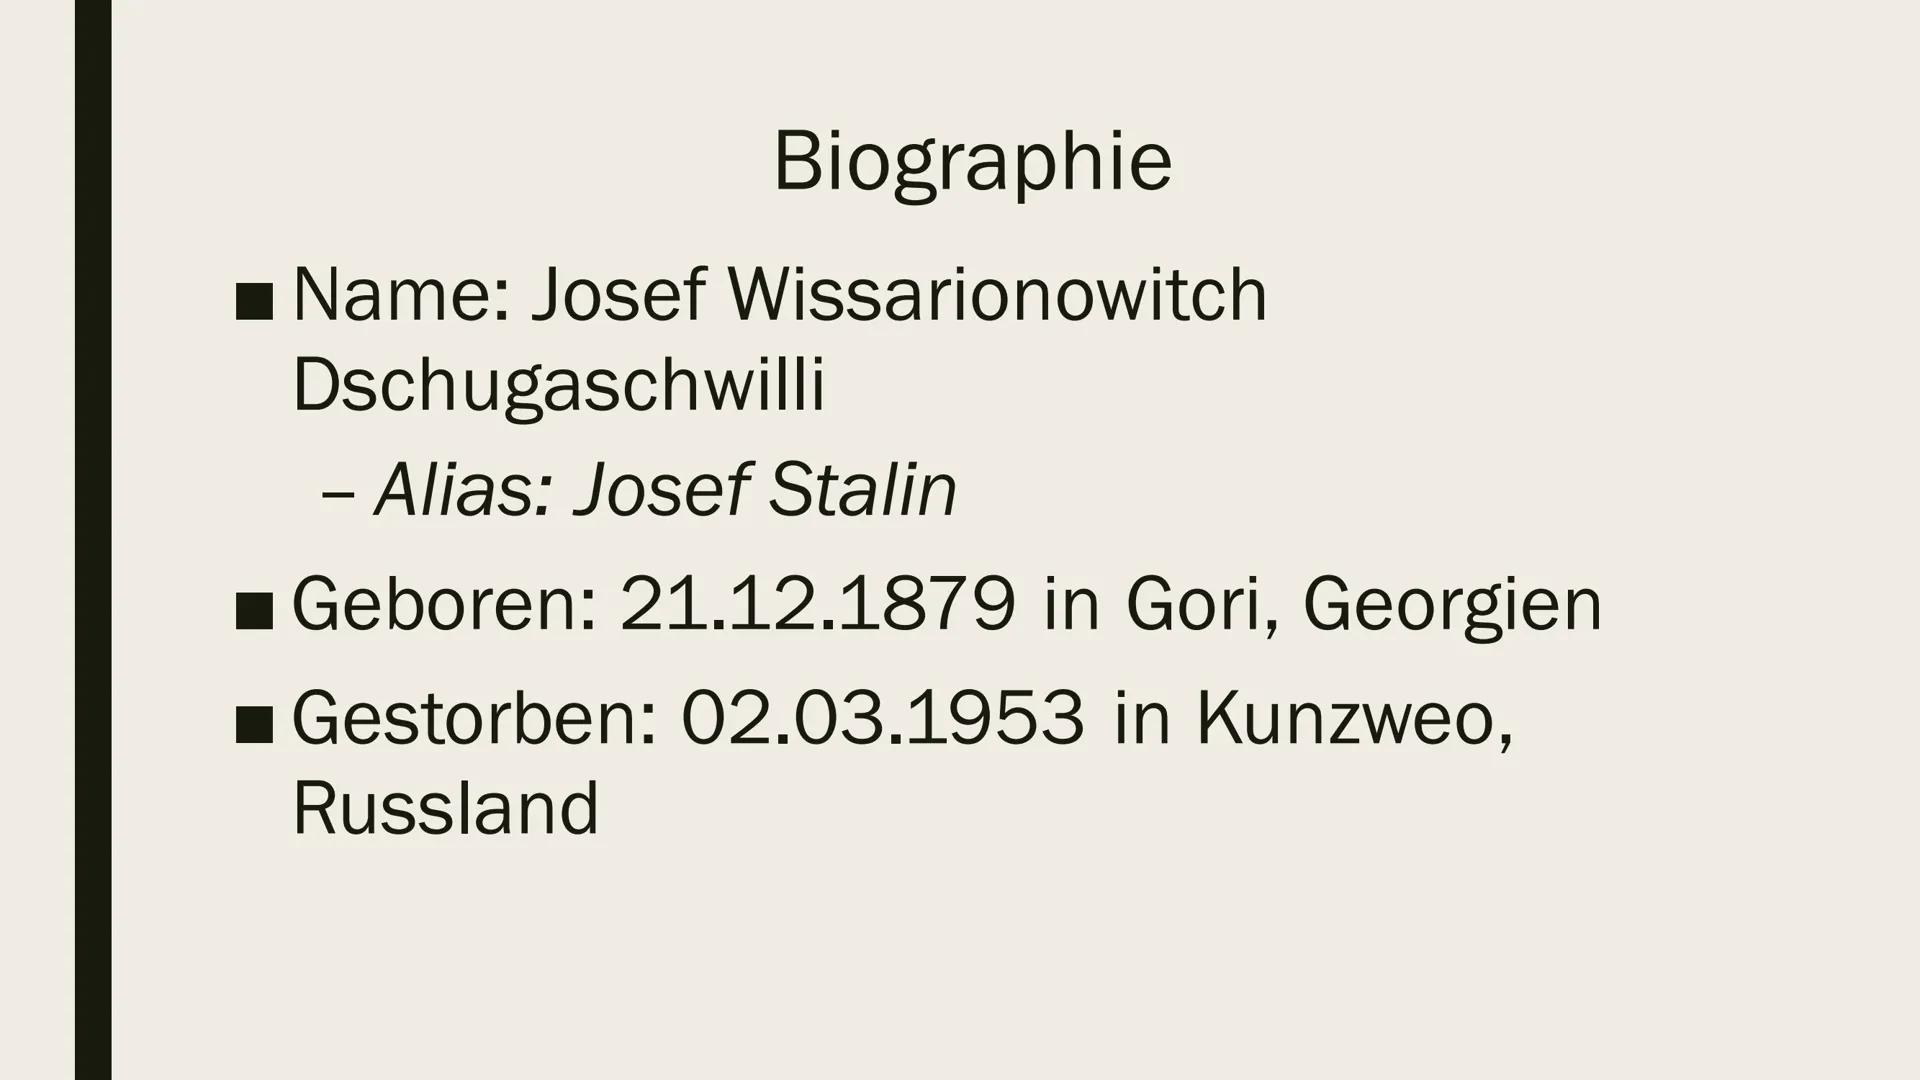 wys
JOSEF STALIN
Präsentation von Ilinca Michels Inhalt
■ Biographie
■ Kindheit& Jugend
■ Revolutionäre Tätigkeit
Hitler-Stalin Pakt
Verbrec